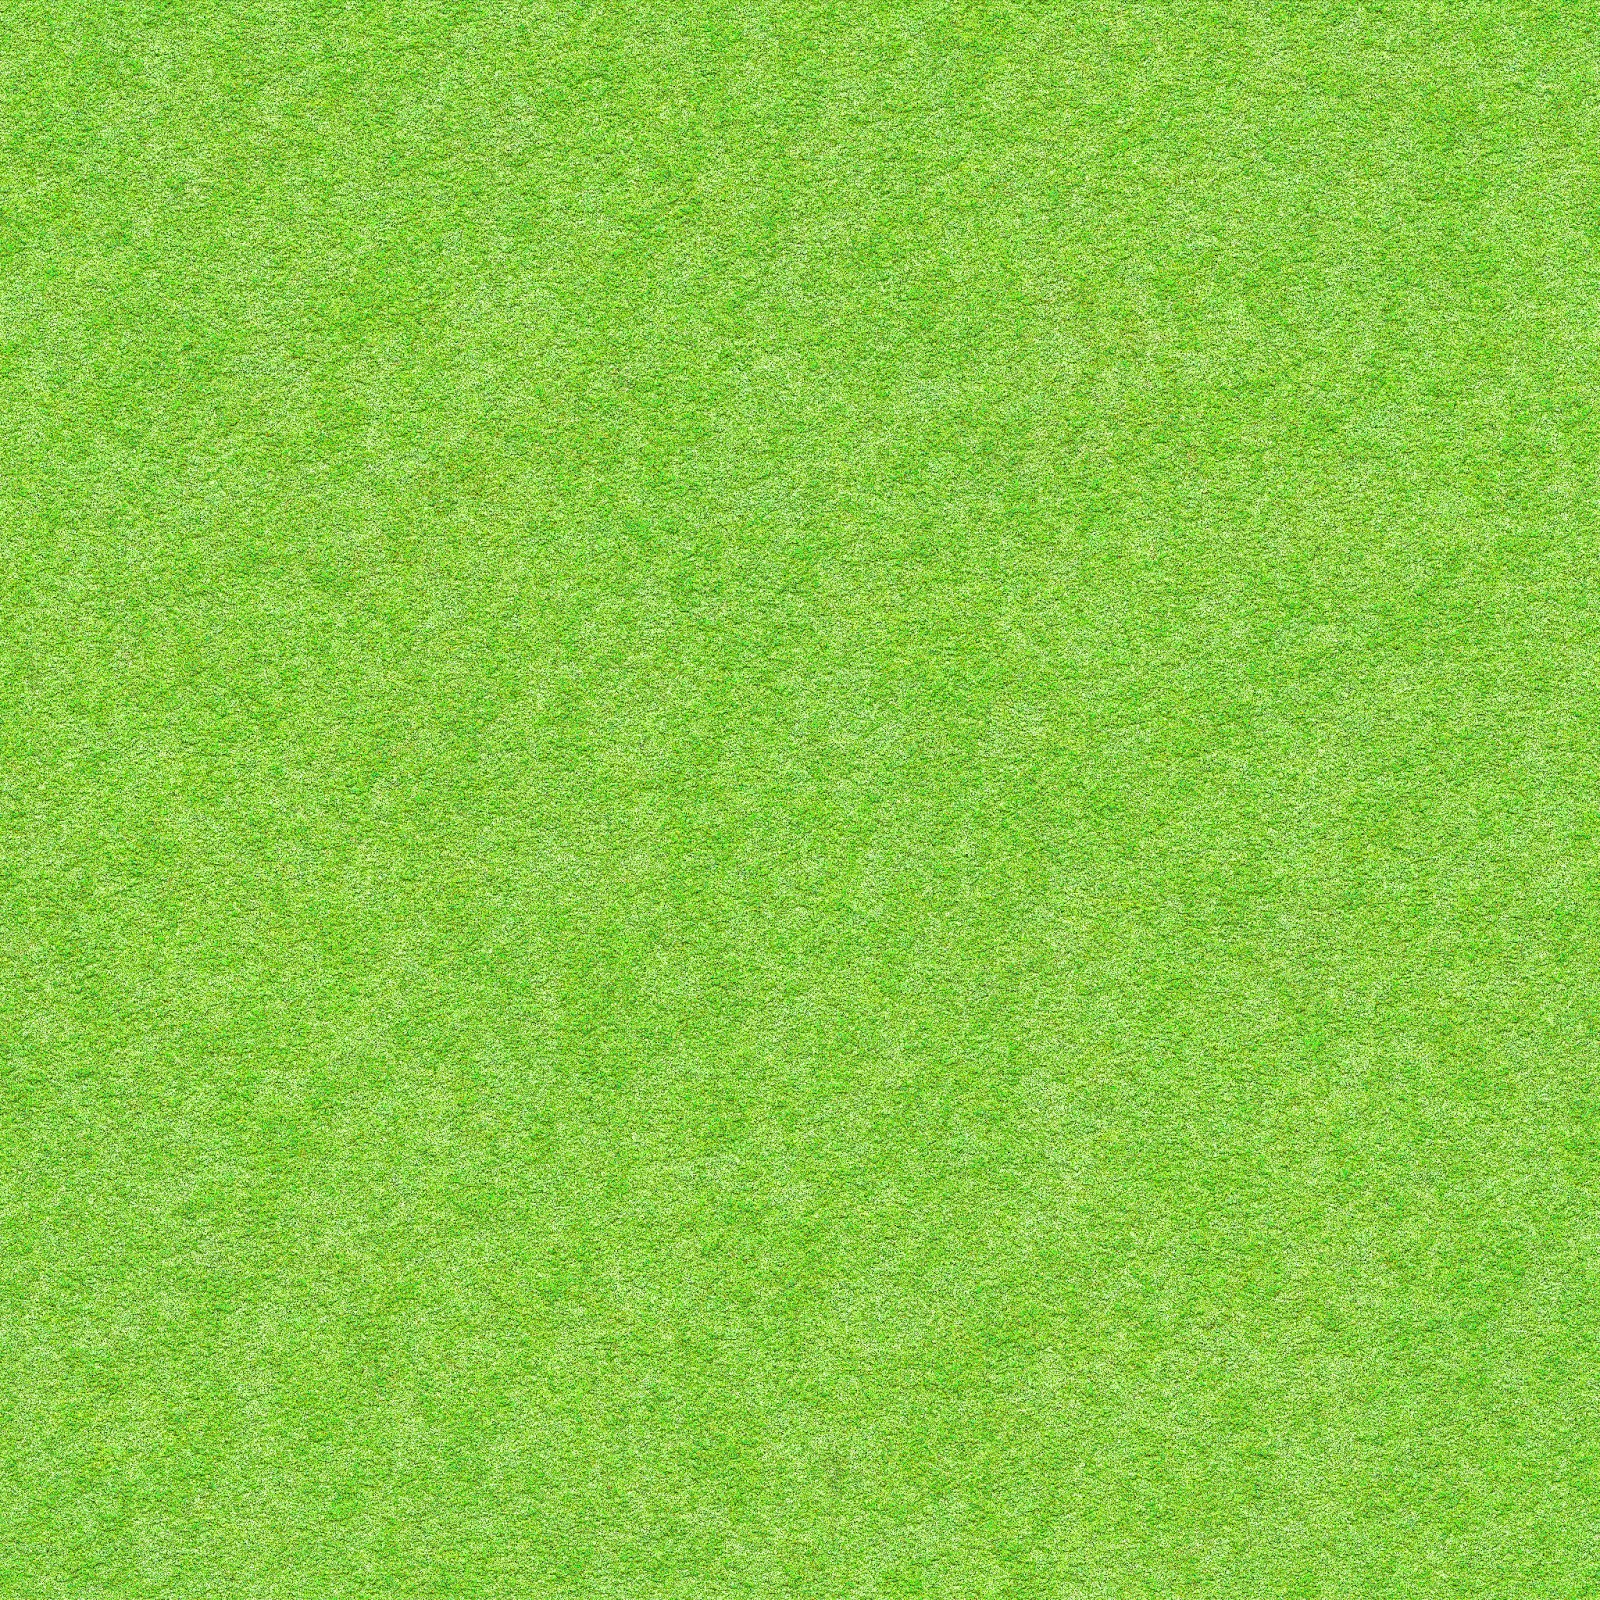 Green_grass_ground_land_dirt_aerial_top_seamless_texture